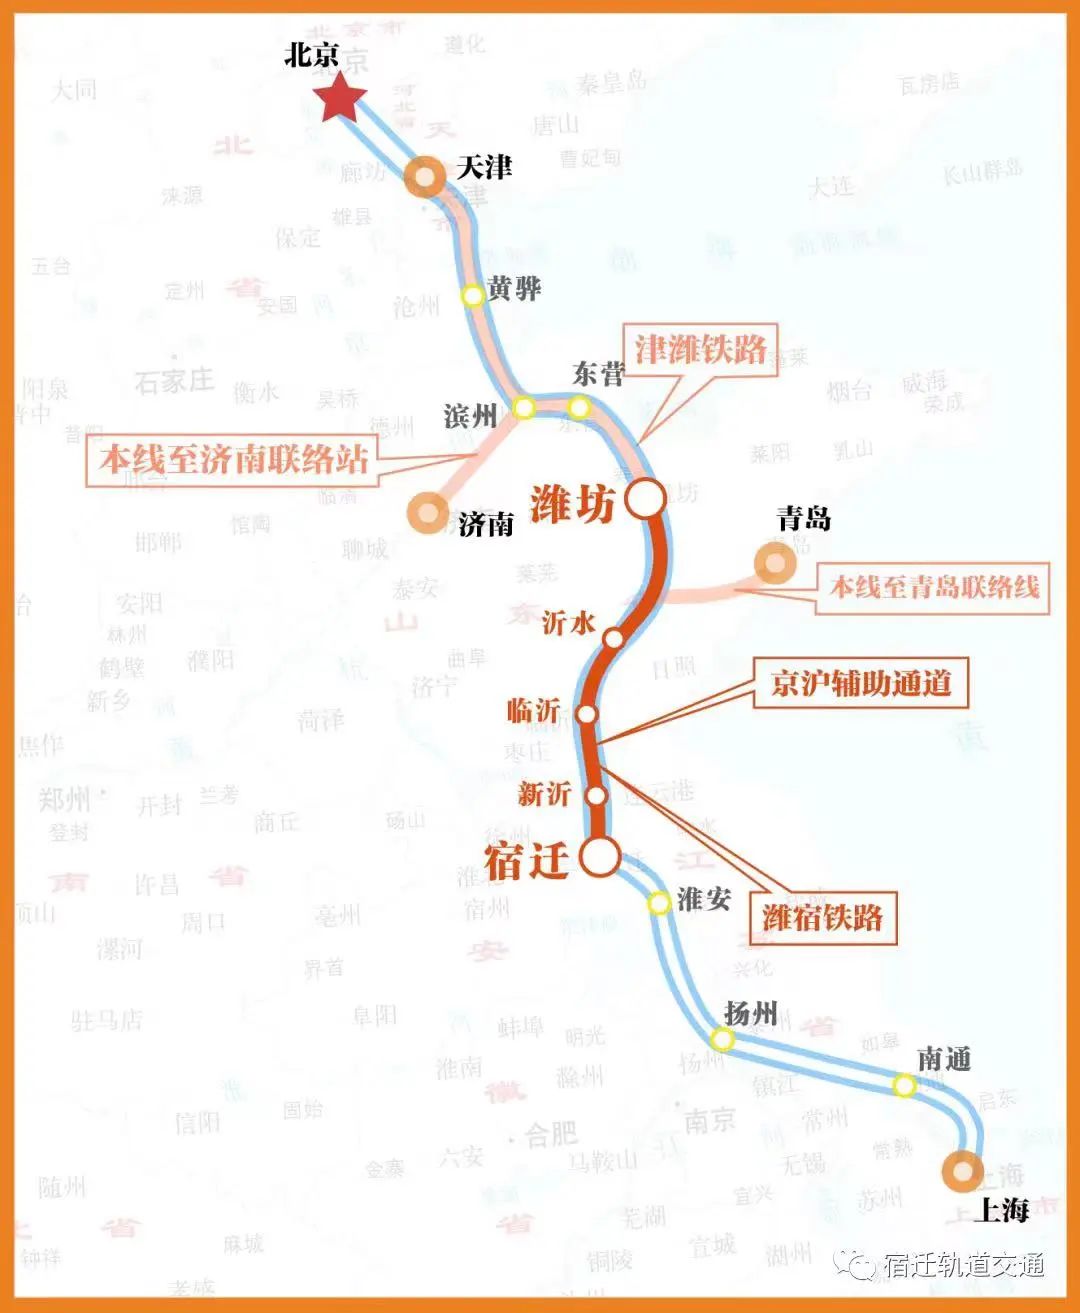 上海高铁时刻表_上海高铁_上海动车时刻表_淘宝助理